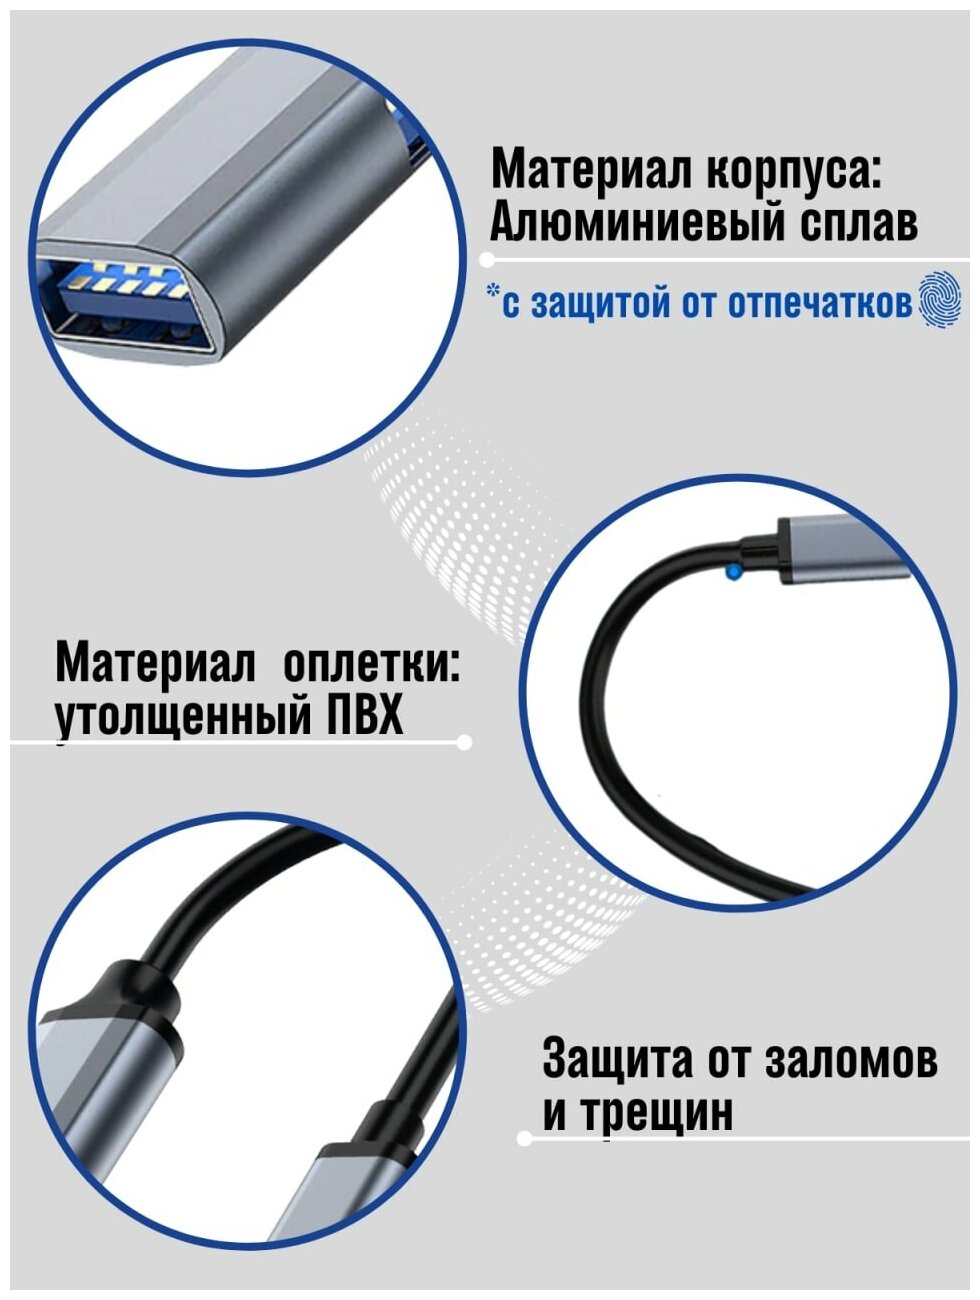 Разветвитель USB 30 на 4 порта концентратор USB 20 адаптер юсб хаб универсальный с подсветкой "Супер скорость"